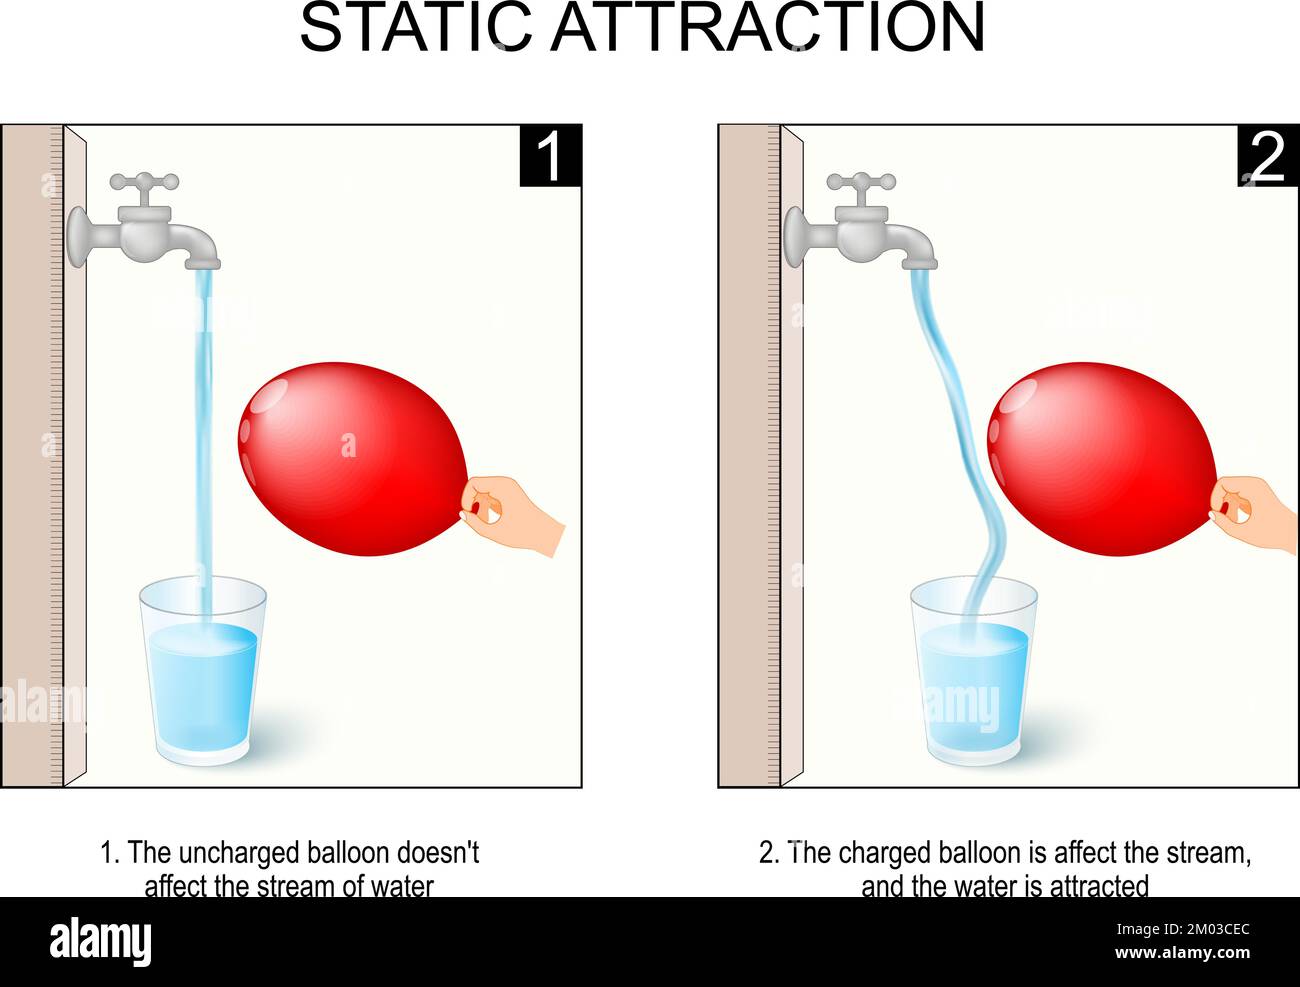 attraction statique. expérience scientifique avec de l'eau, ballon et robinet. Le ballon non chargé n'affecte pas le cours d'eau. Le ballon chargé Illustration de Vecteur